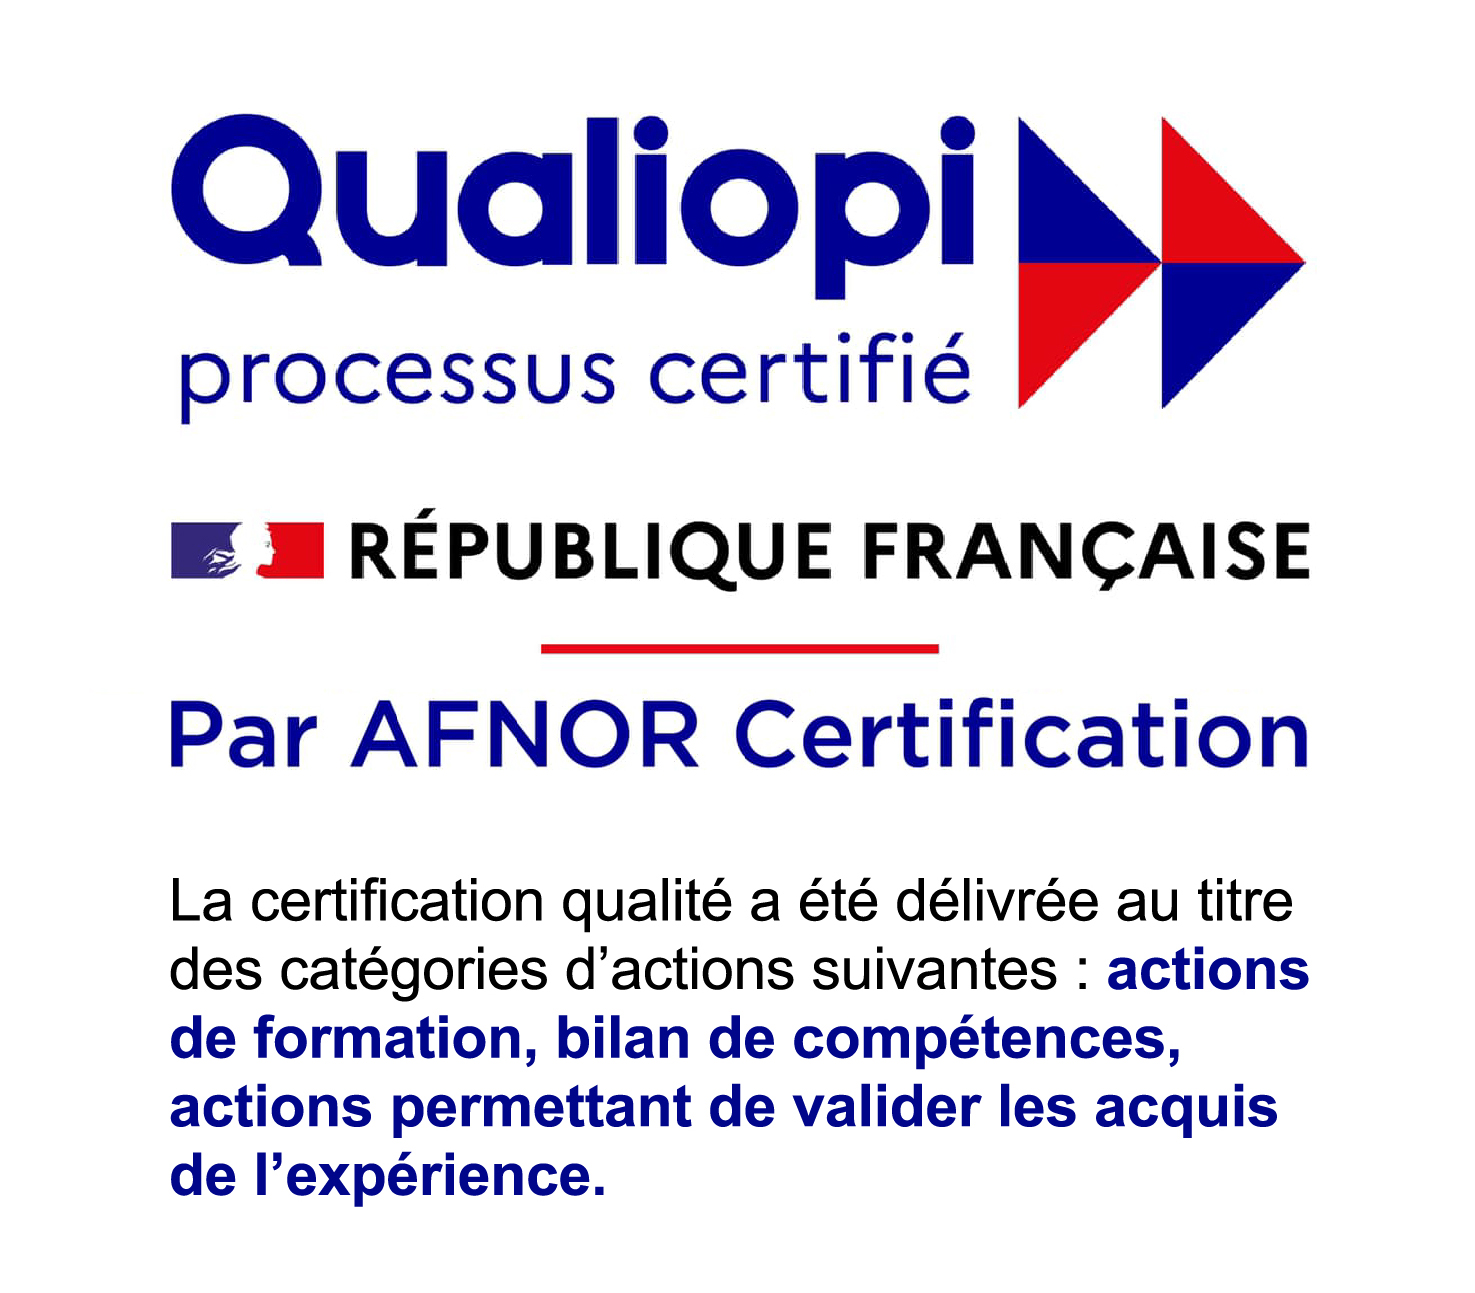 Qualiopi est une certification officielle